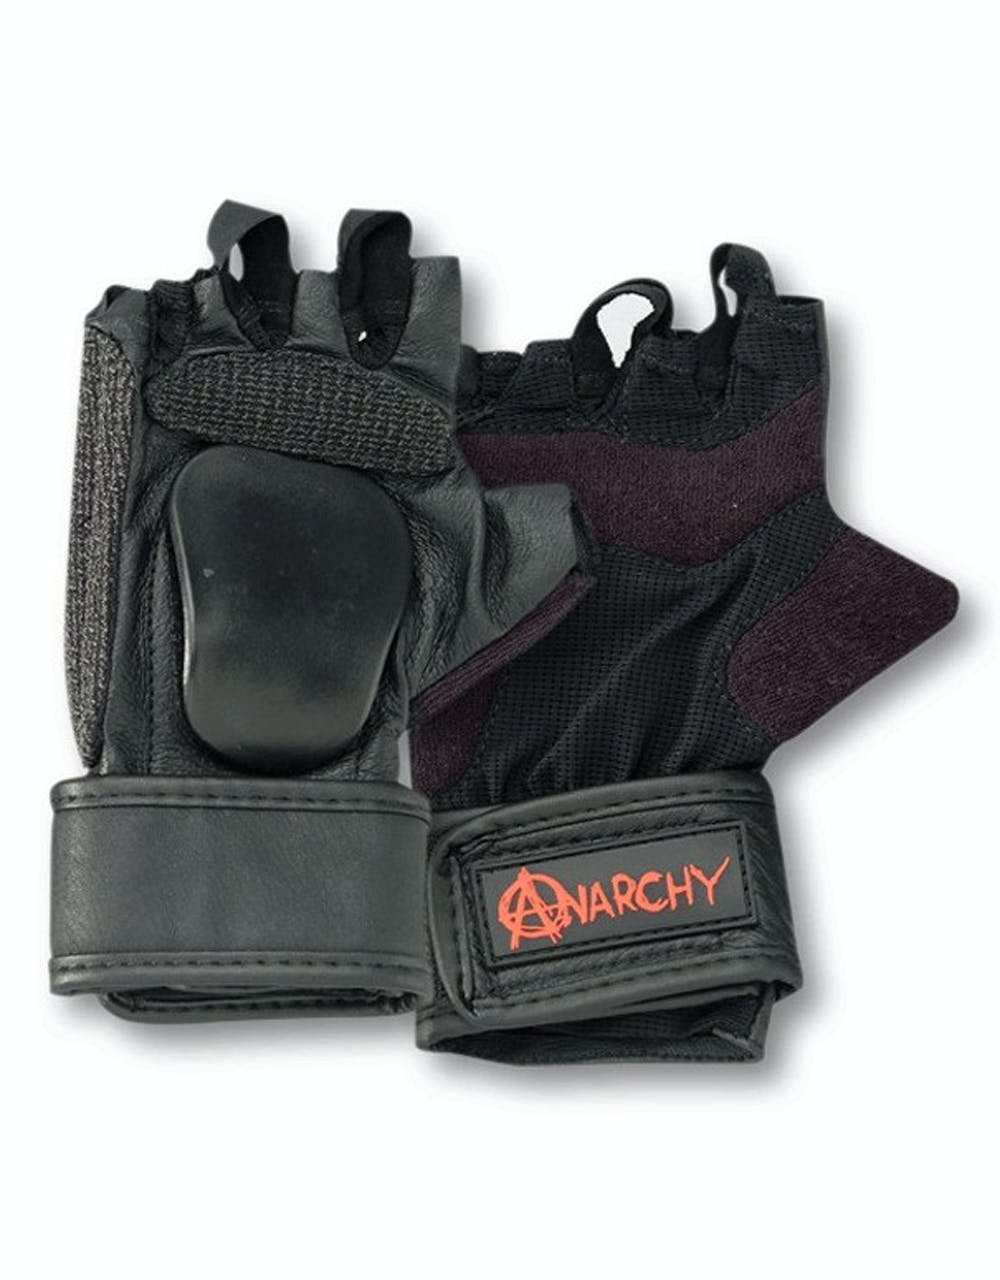 Anarchy Hand Slider Gloves - Black